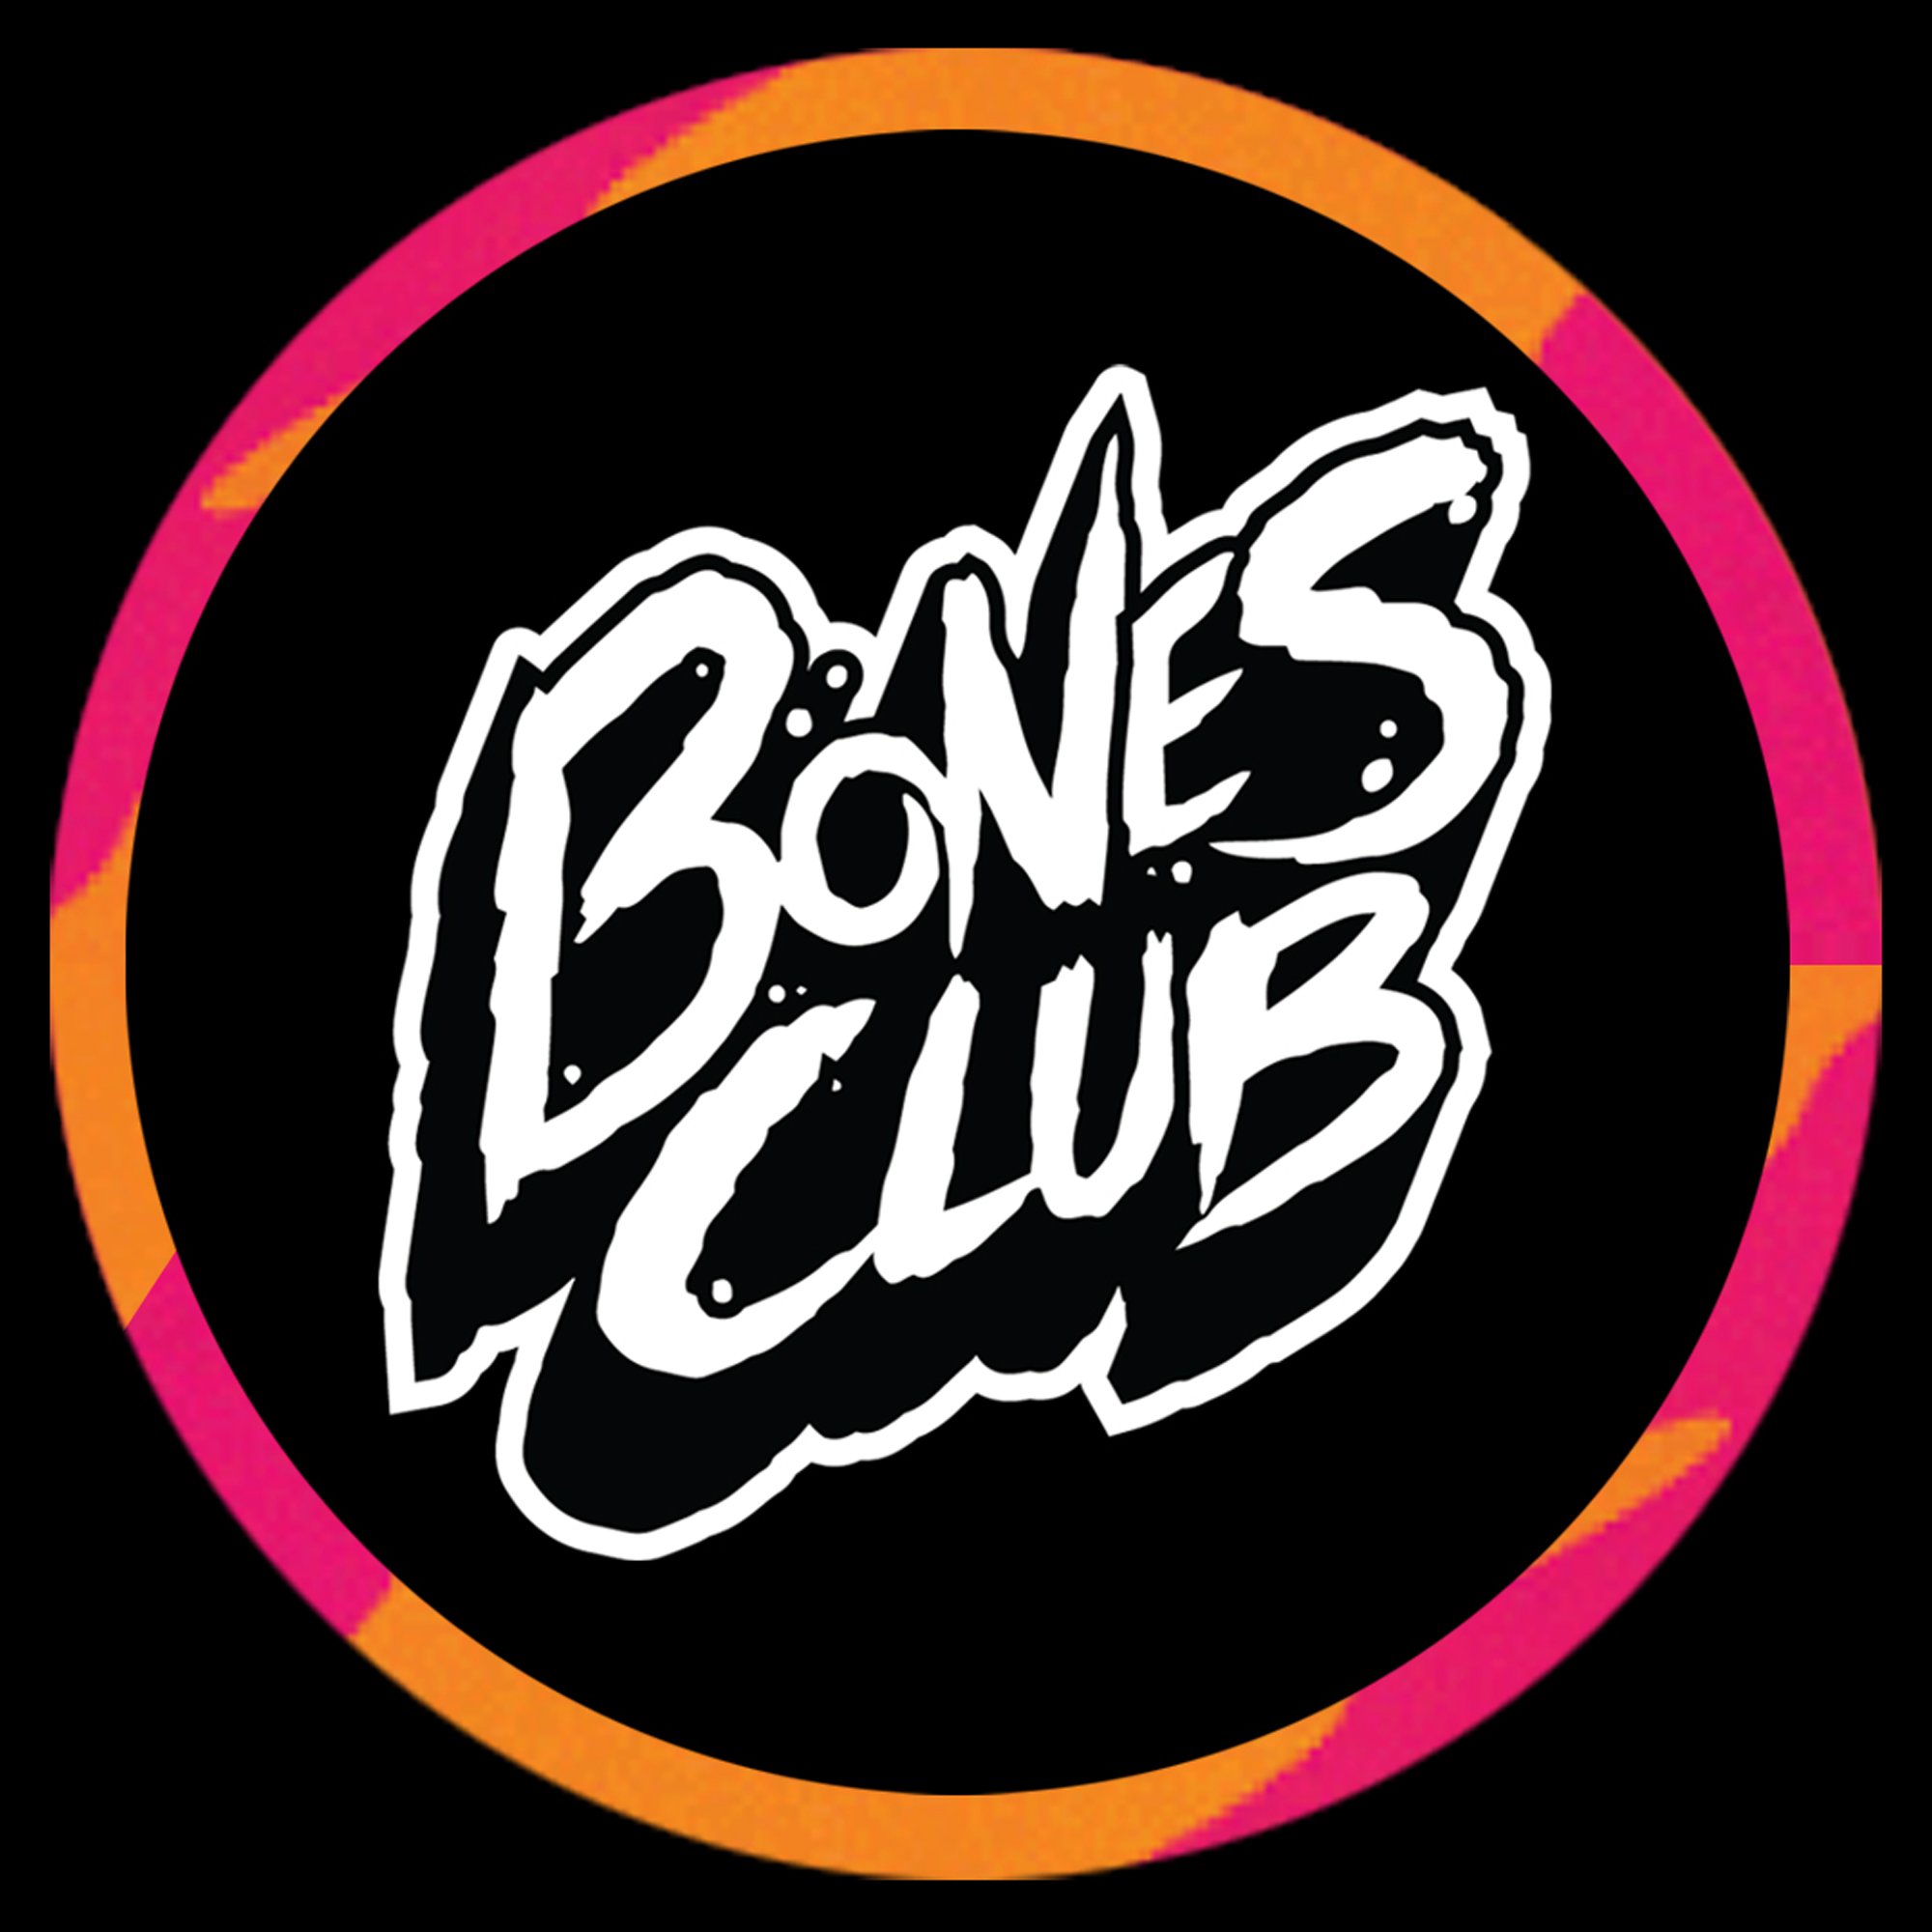 Bones Club